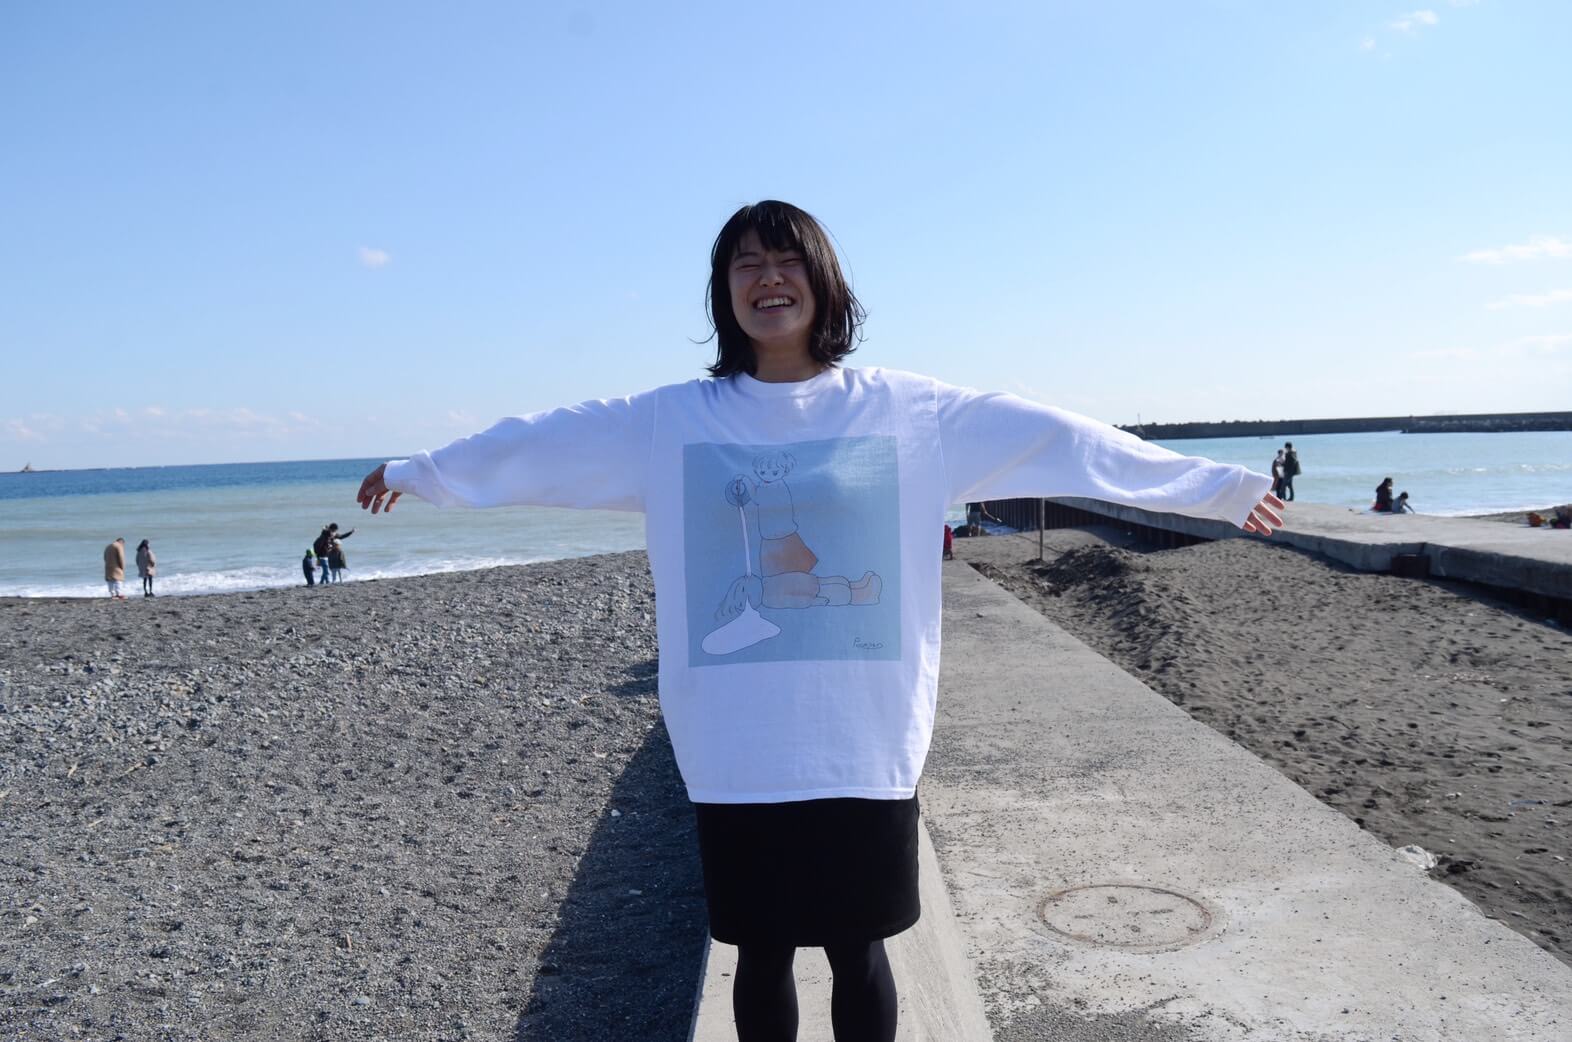 豊川弘恵さんのポートレート写真。白いシャツに黒いスカートをはいた女性が、両手を広げ海岸を背景にポーズをとっている